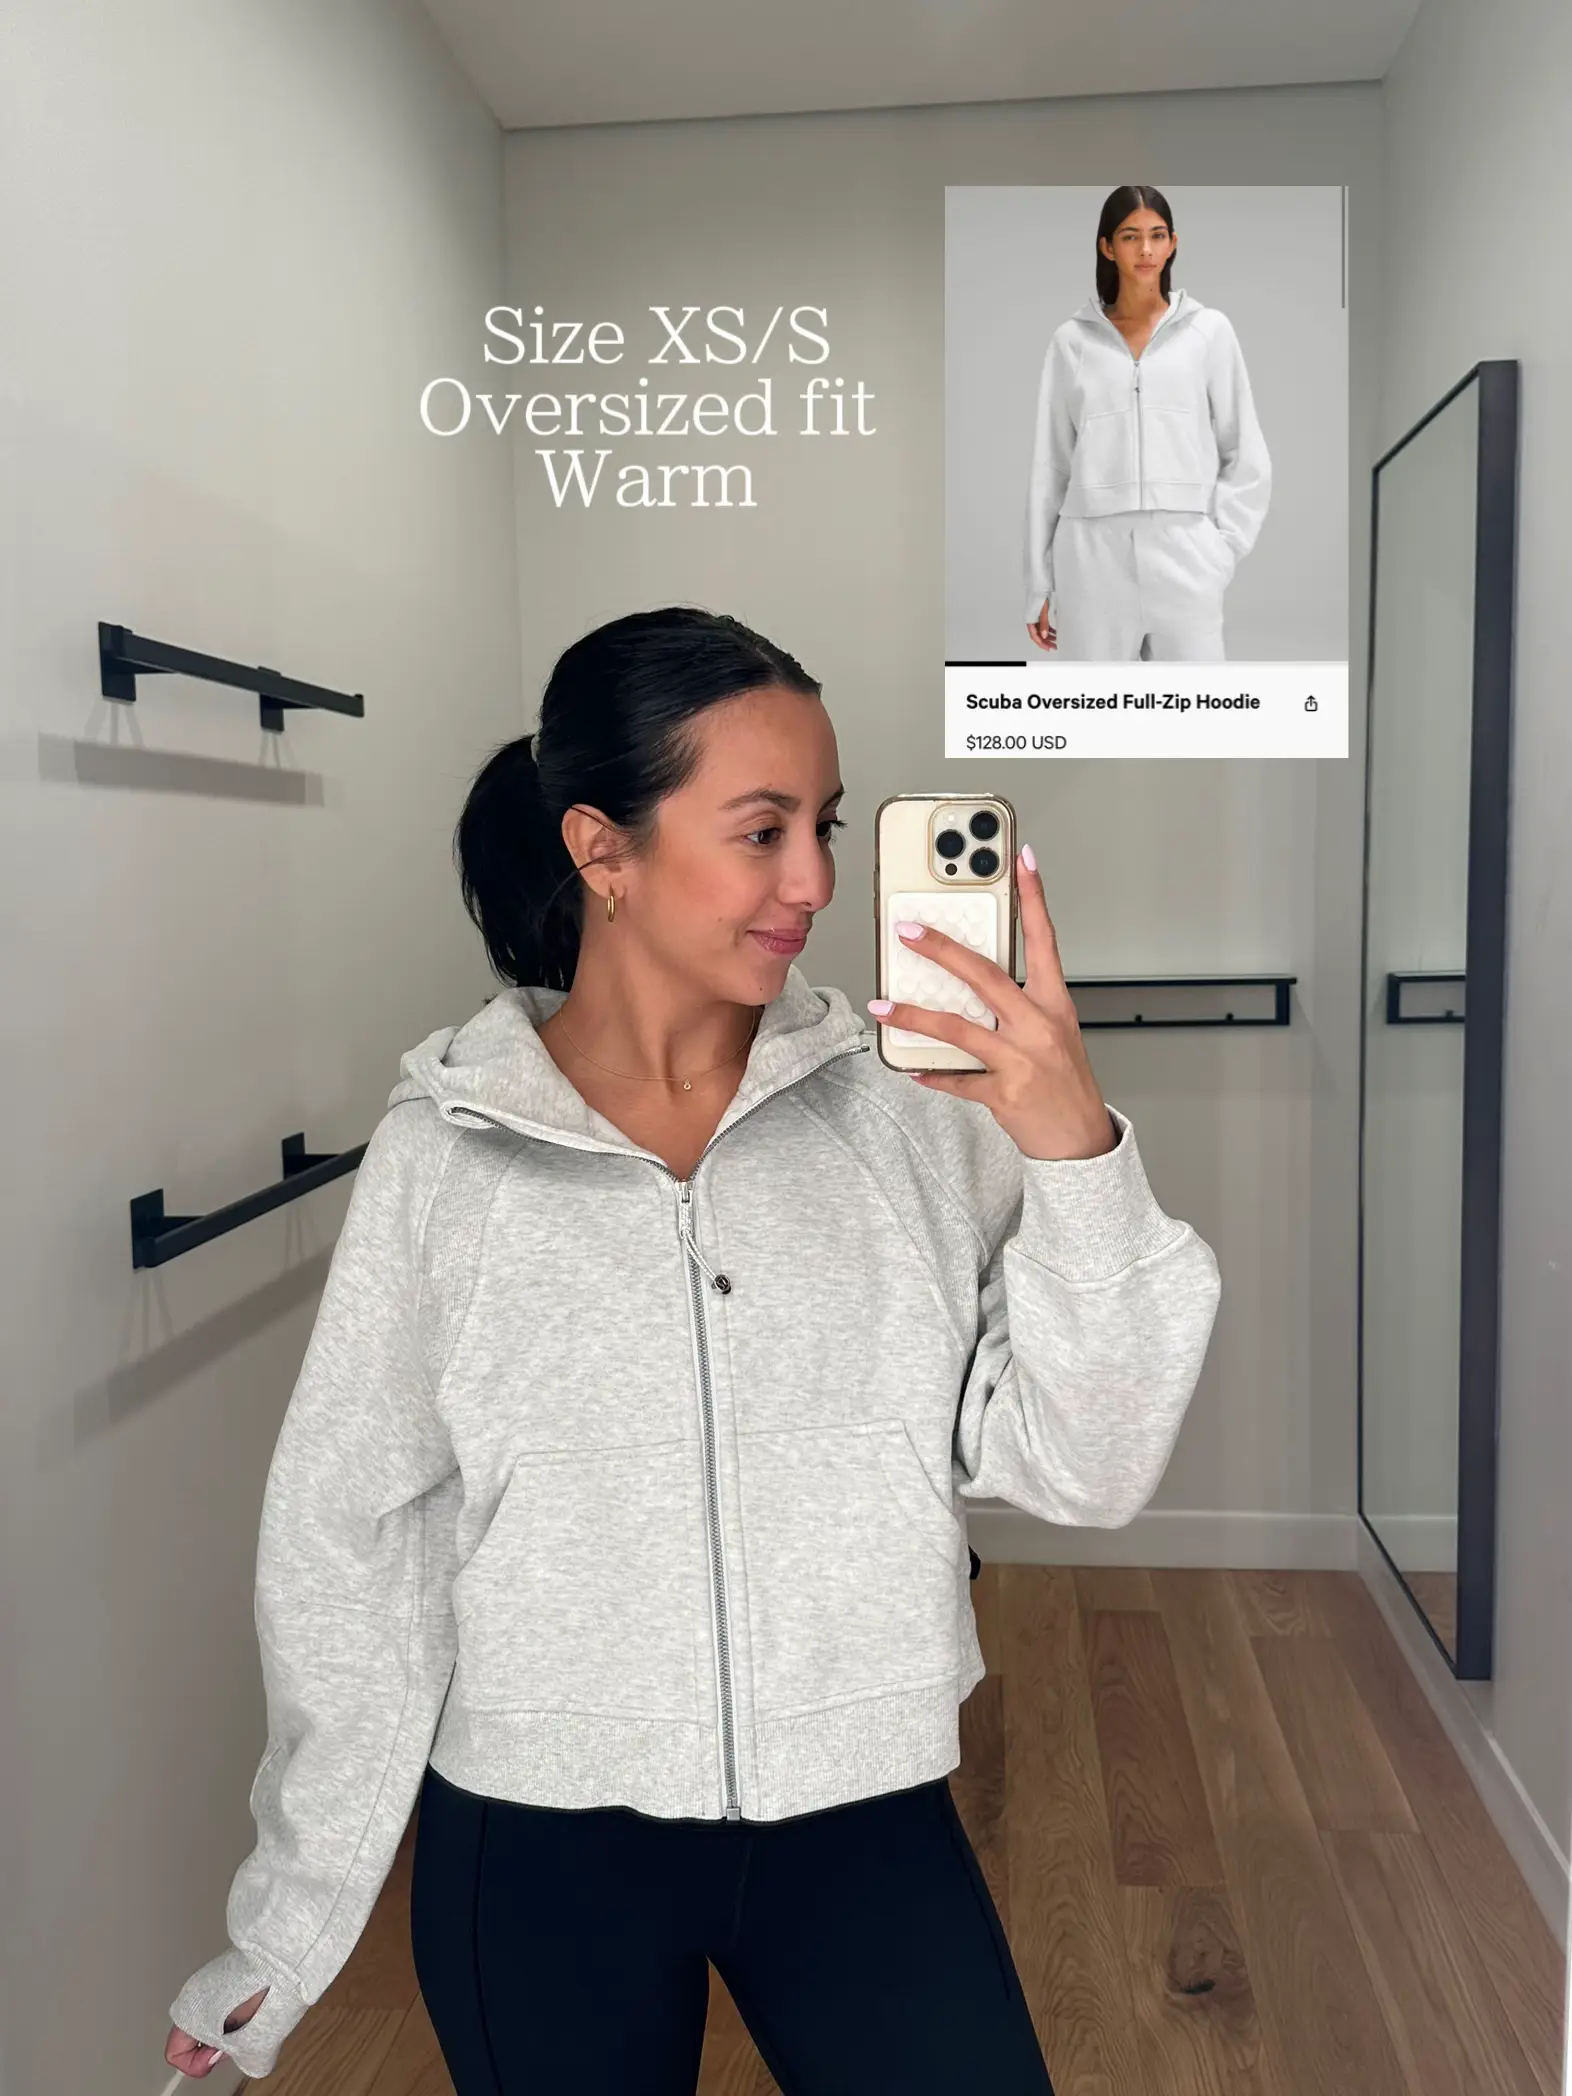 CRZ YOGA Women's Oversied Fit Outerwear Fleece Lined Half Zip Hoodies